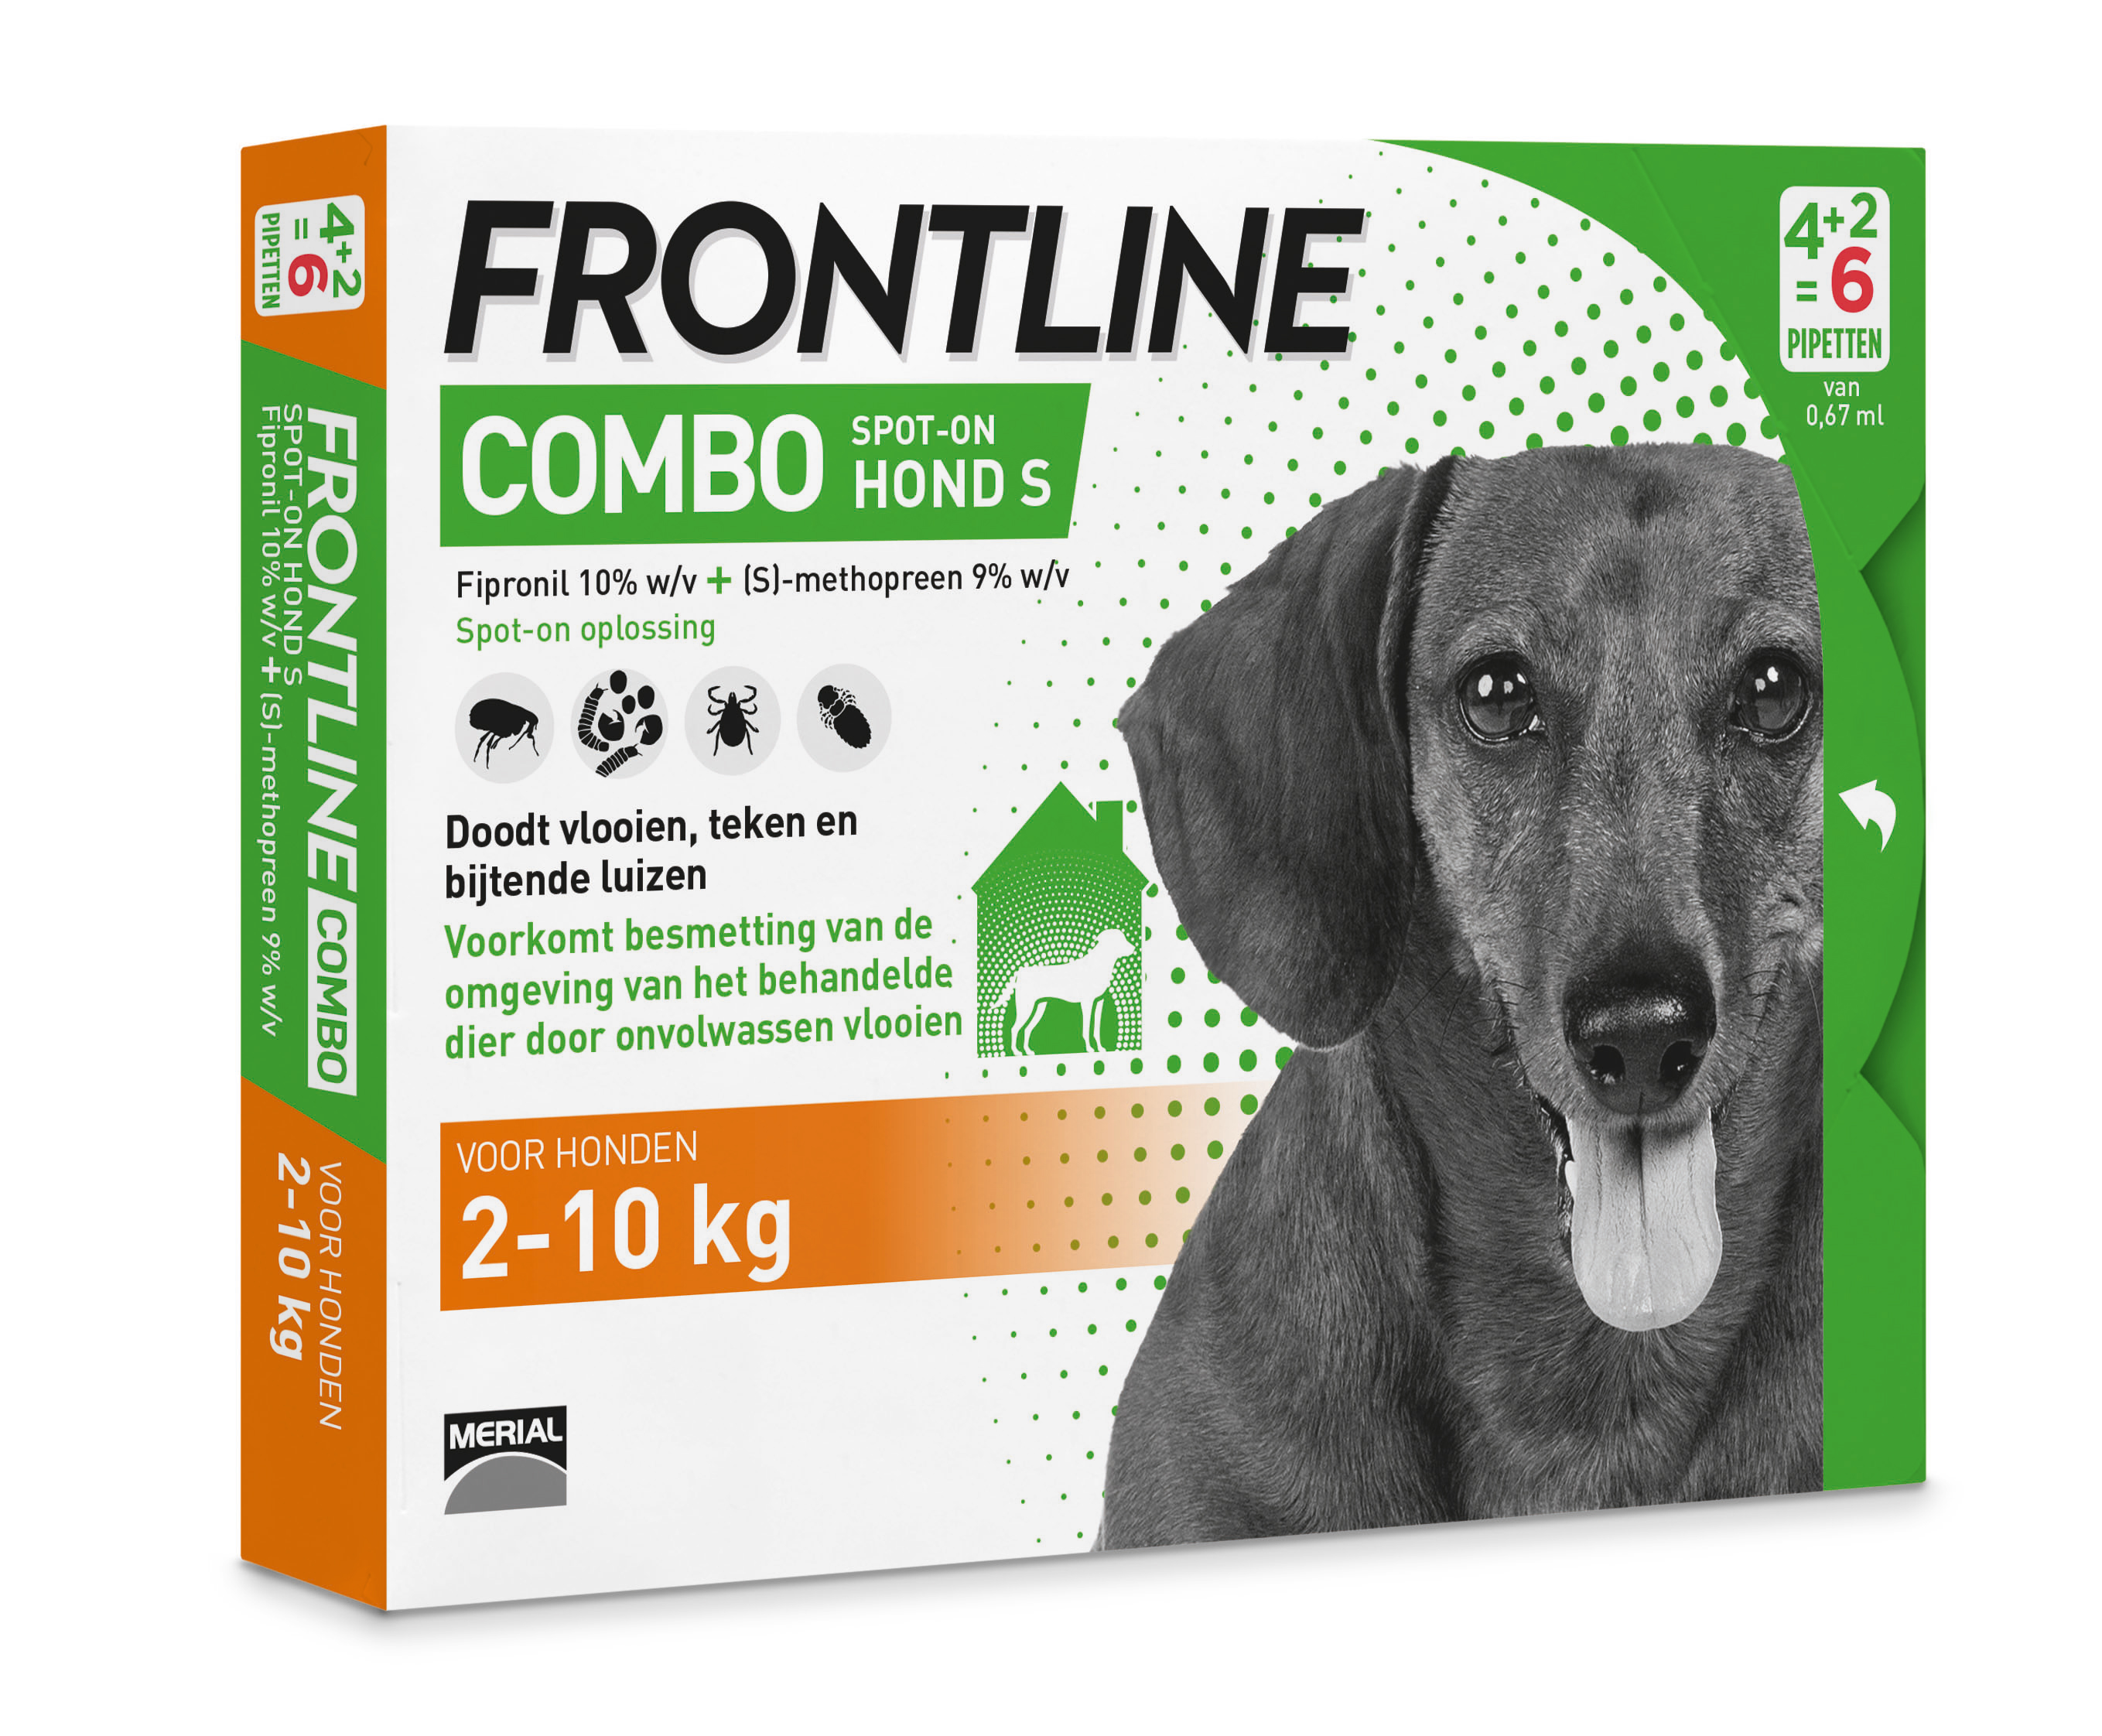 Frontline Combo hond small 2-10kg  6 pip